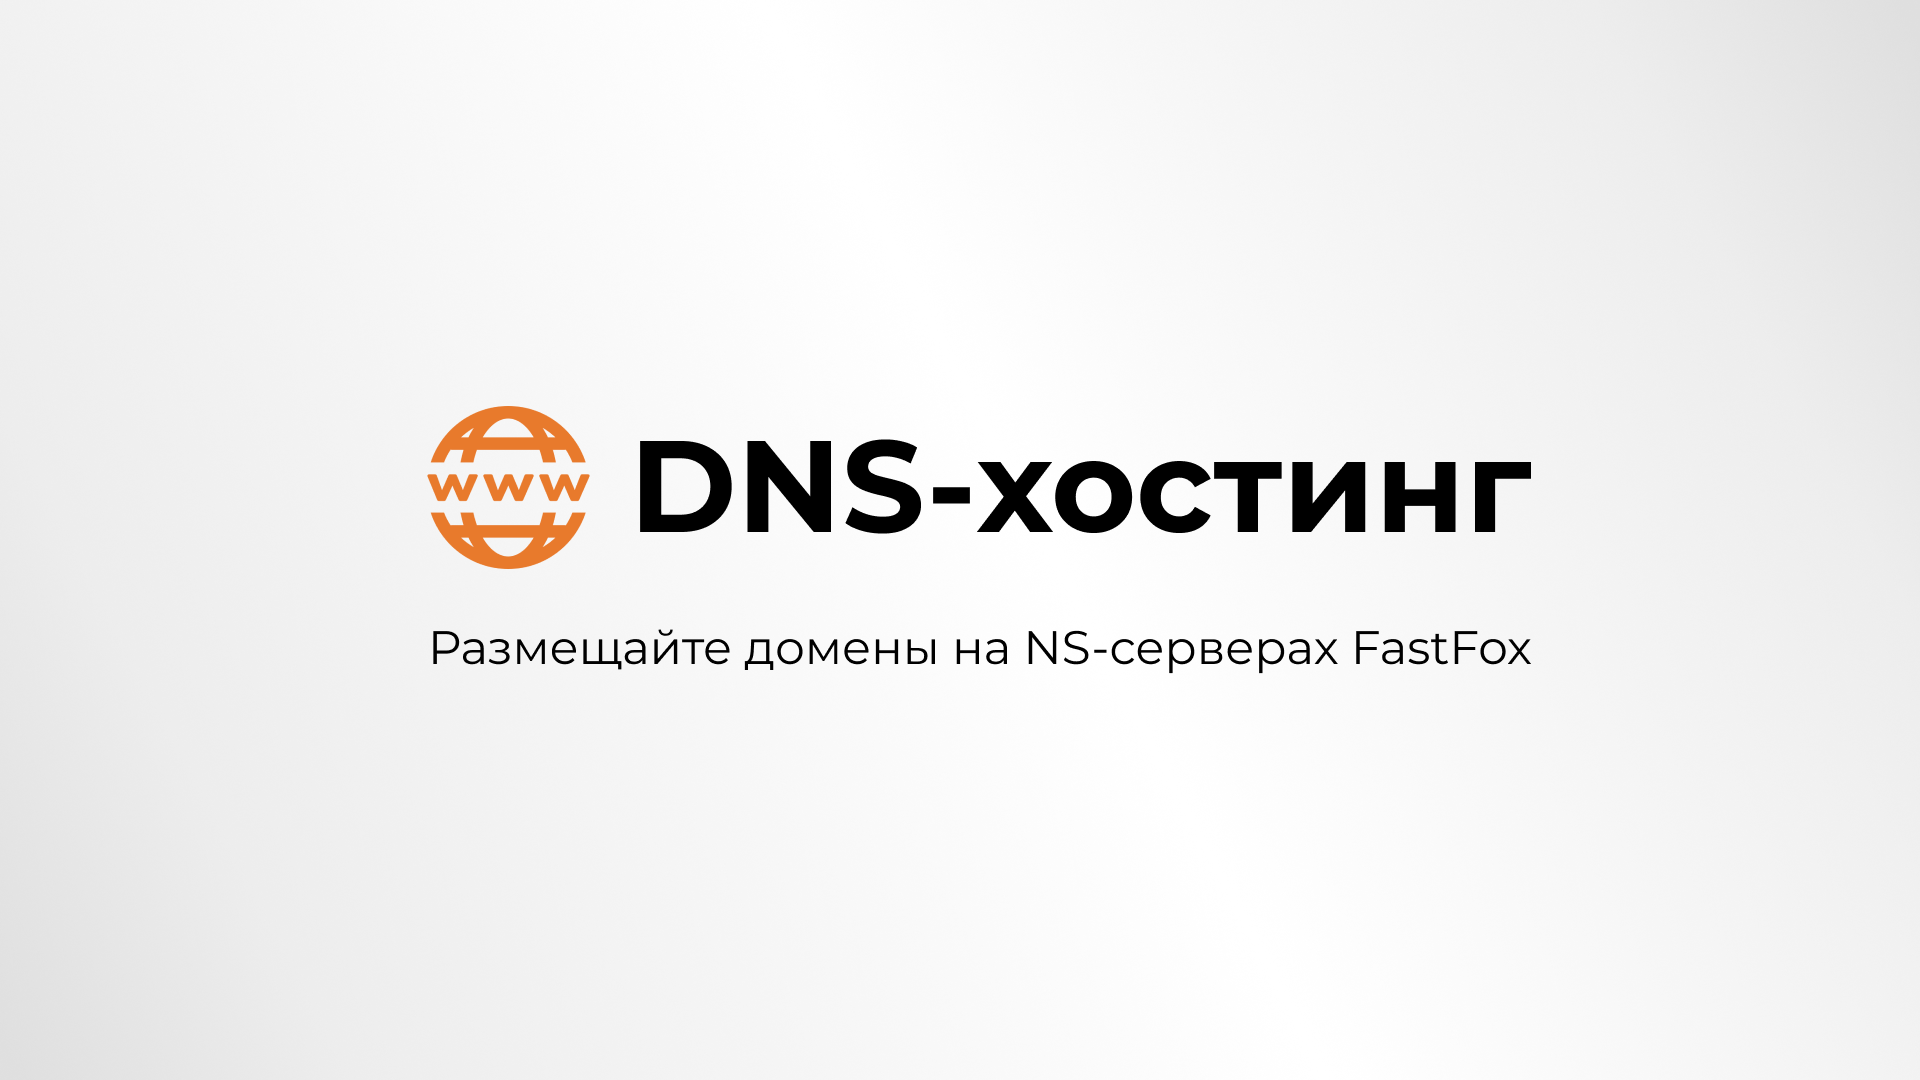 Представляем услугу DNS-хостинга